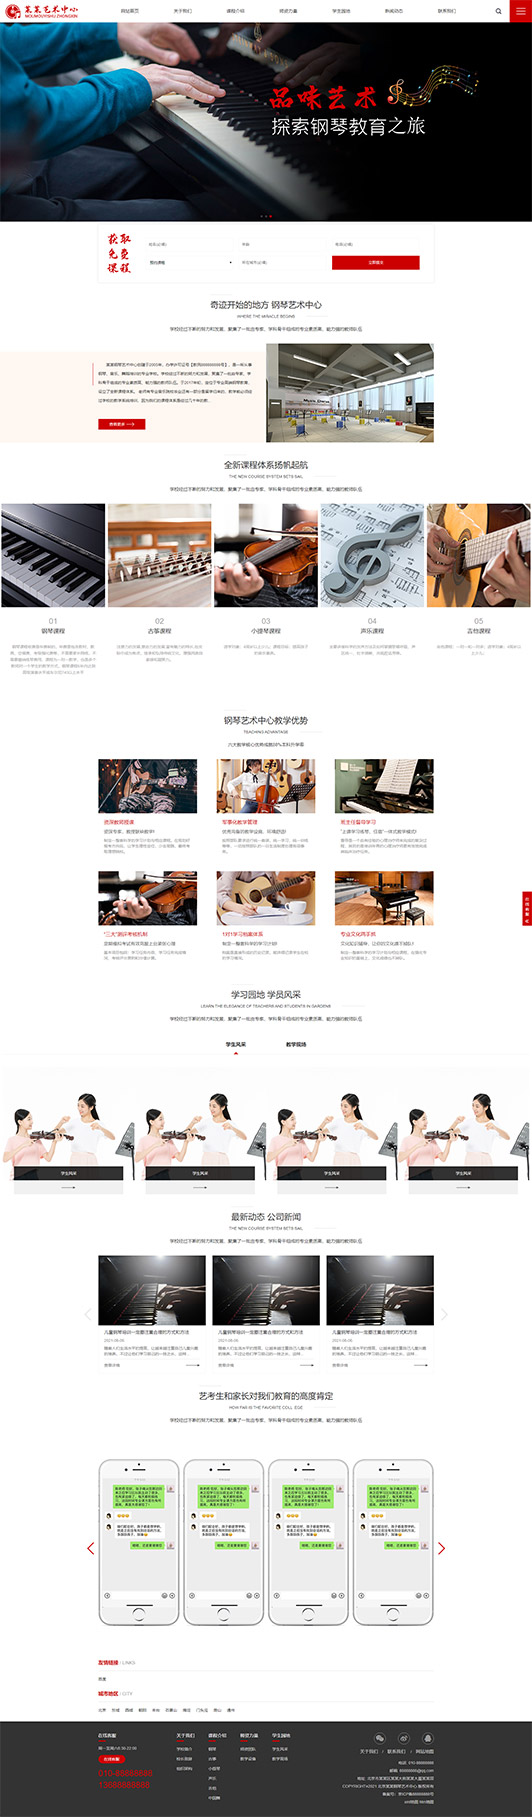 资阳钢琴艺术培训公司响应式企业网站